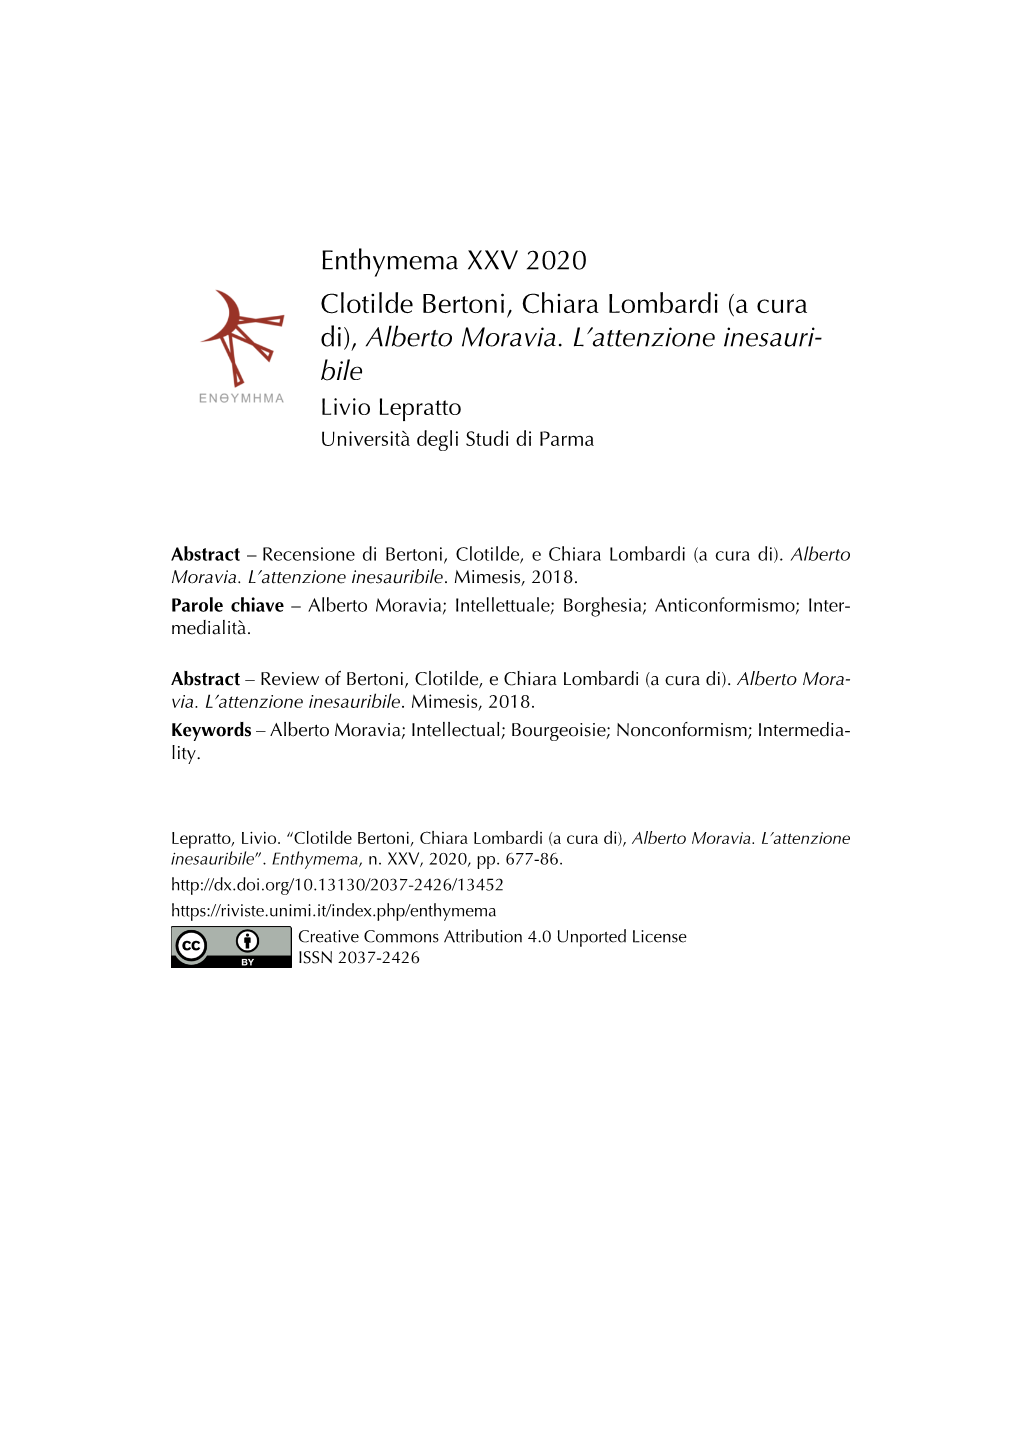 Enthymema XXV 2020 Clotilde Bertoni, Chiara Lombardi (A Cura Di), Alberto Moravia